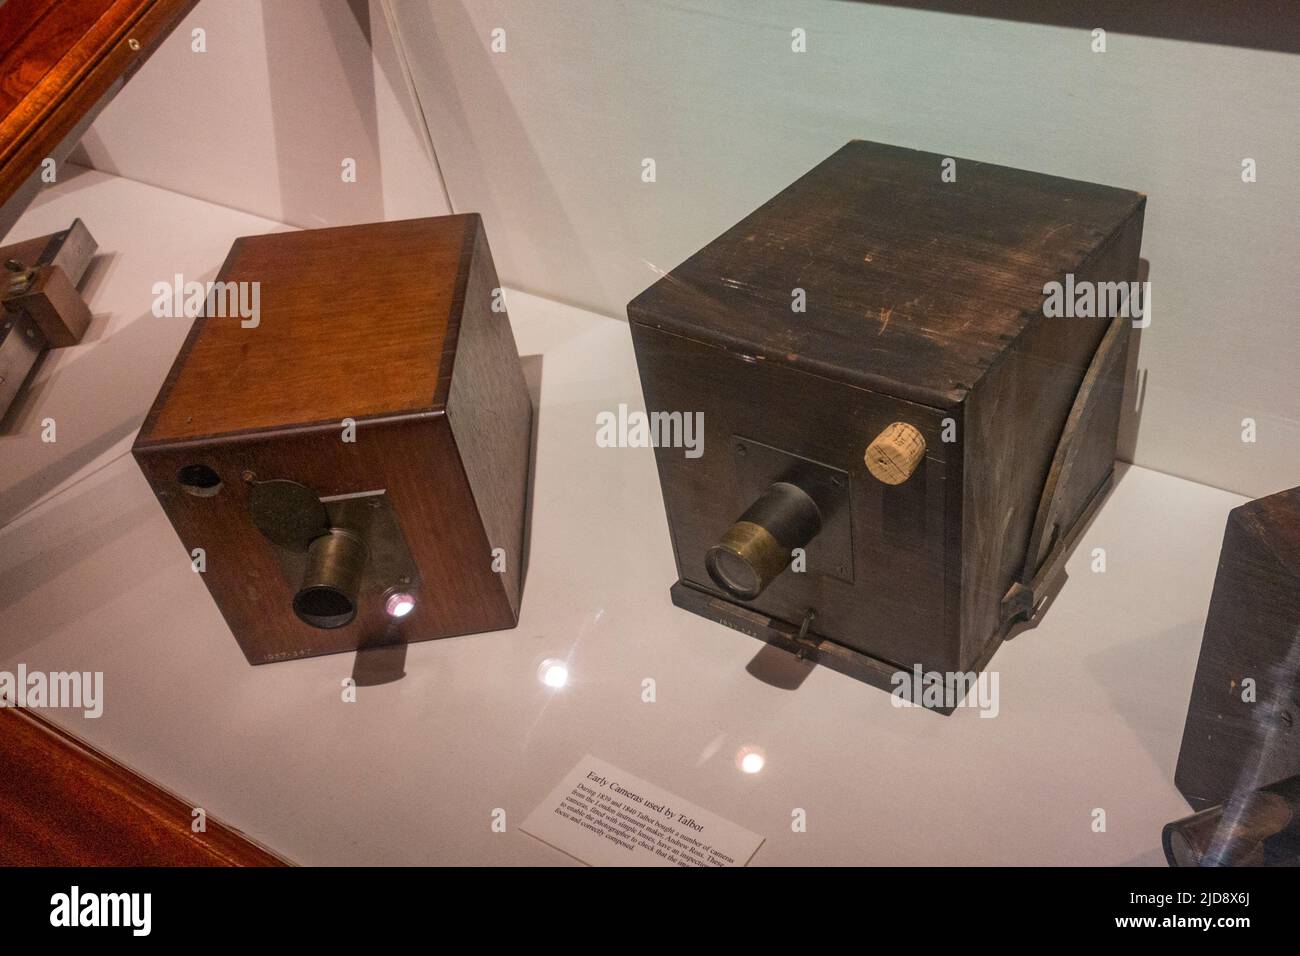 Beispiele für frühe Kameras (von Andrew Ross), die 1840s von William Henry Fox Talbot in einem Medienmuseum ausgestellt wurden. Stockfoto